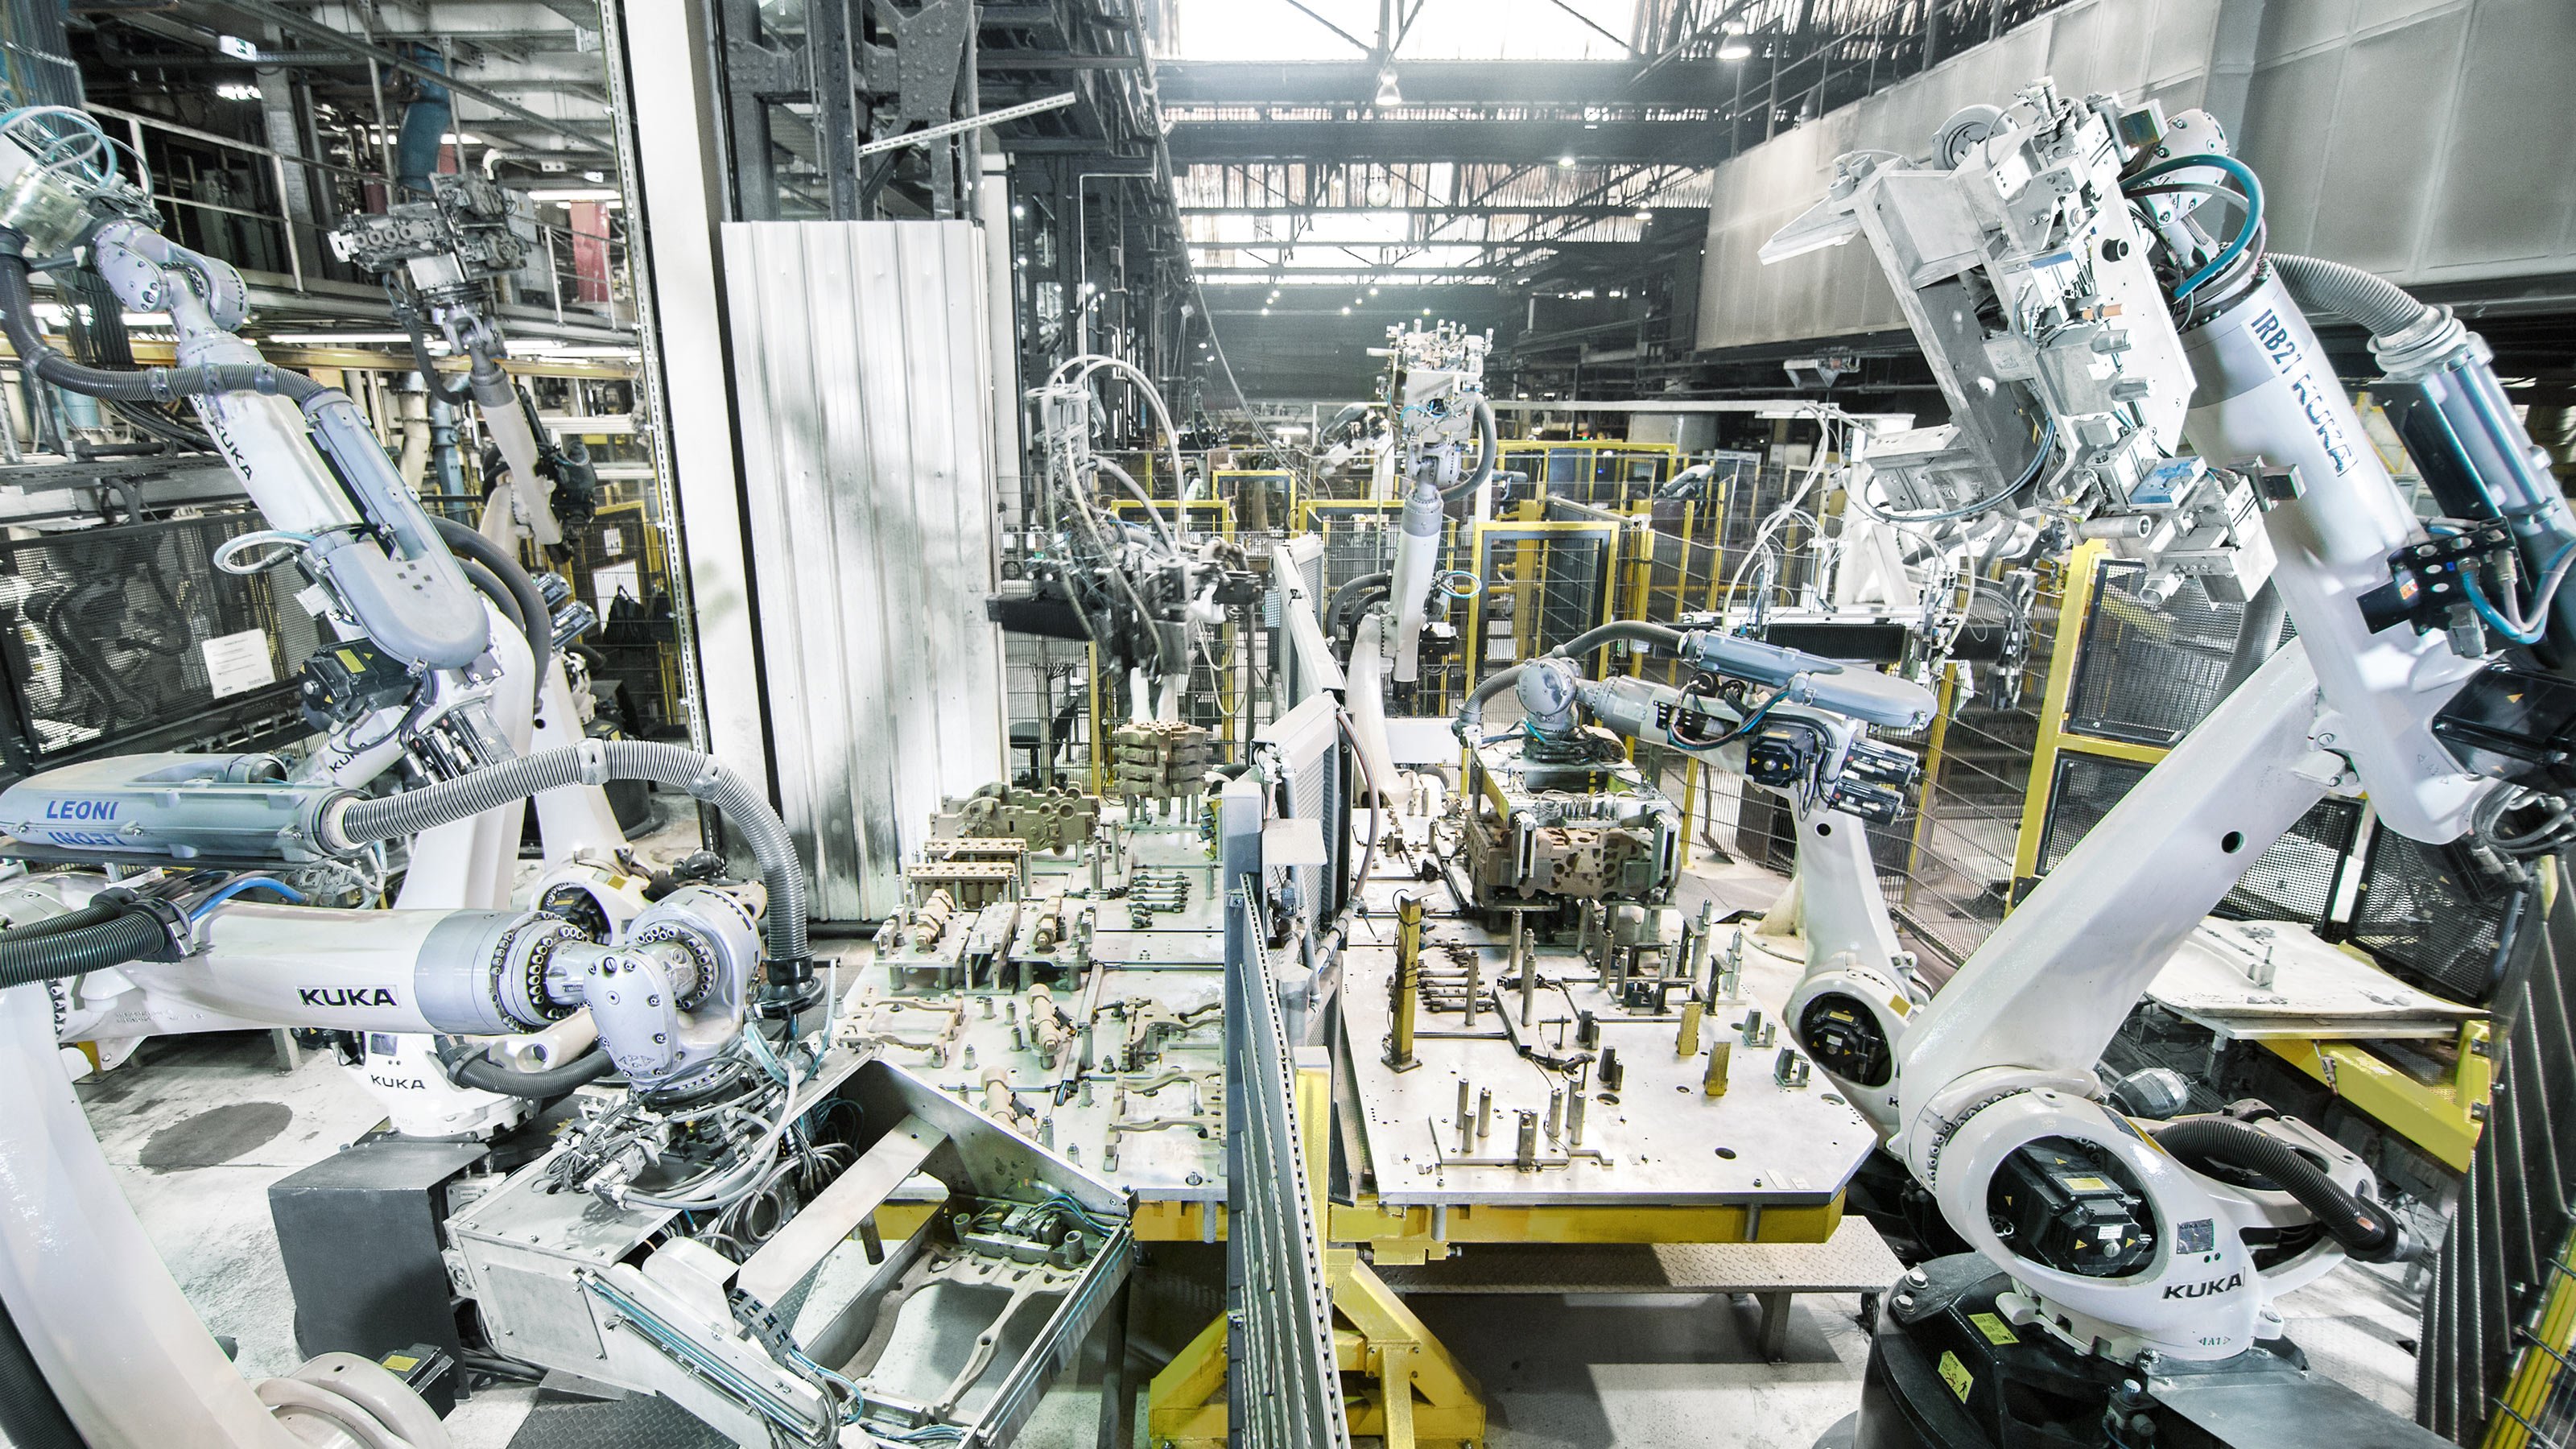 Machinery company. Завод фабрика kuka в Германии. Машиностроение. Промышленность будущего. Роботы для автоматизации производства.